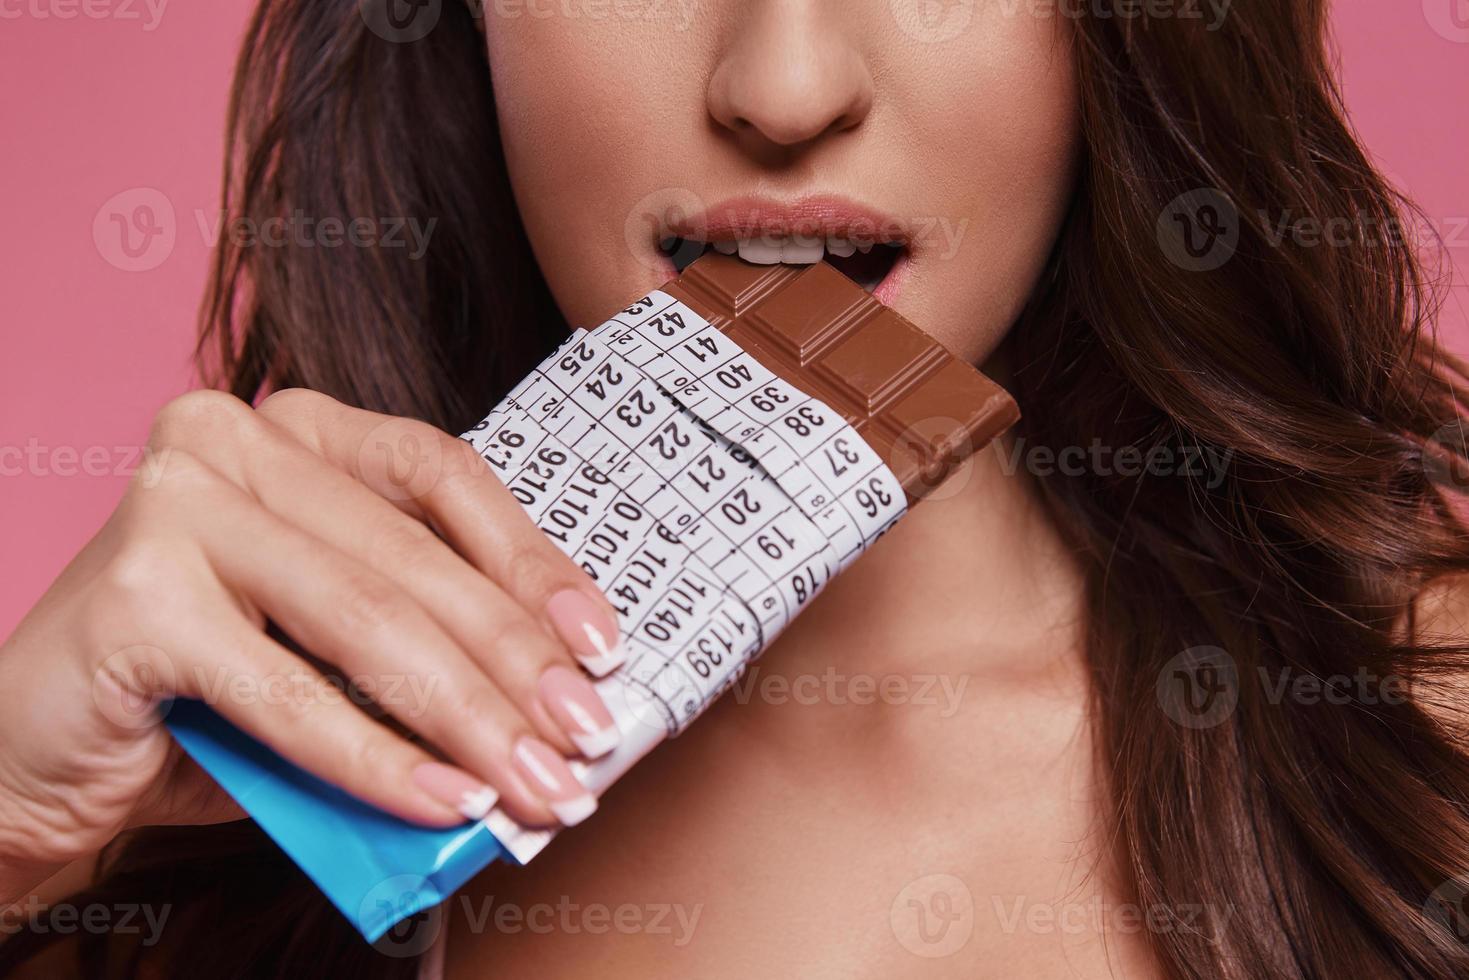 comida proibida. close-up de jovem comendo chocolate embrulhado em fita métrica em pé contra um fundo rosa foto